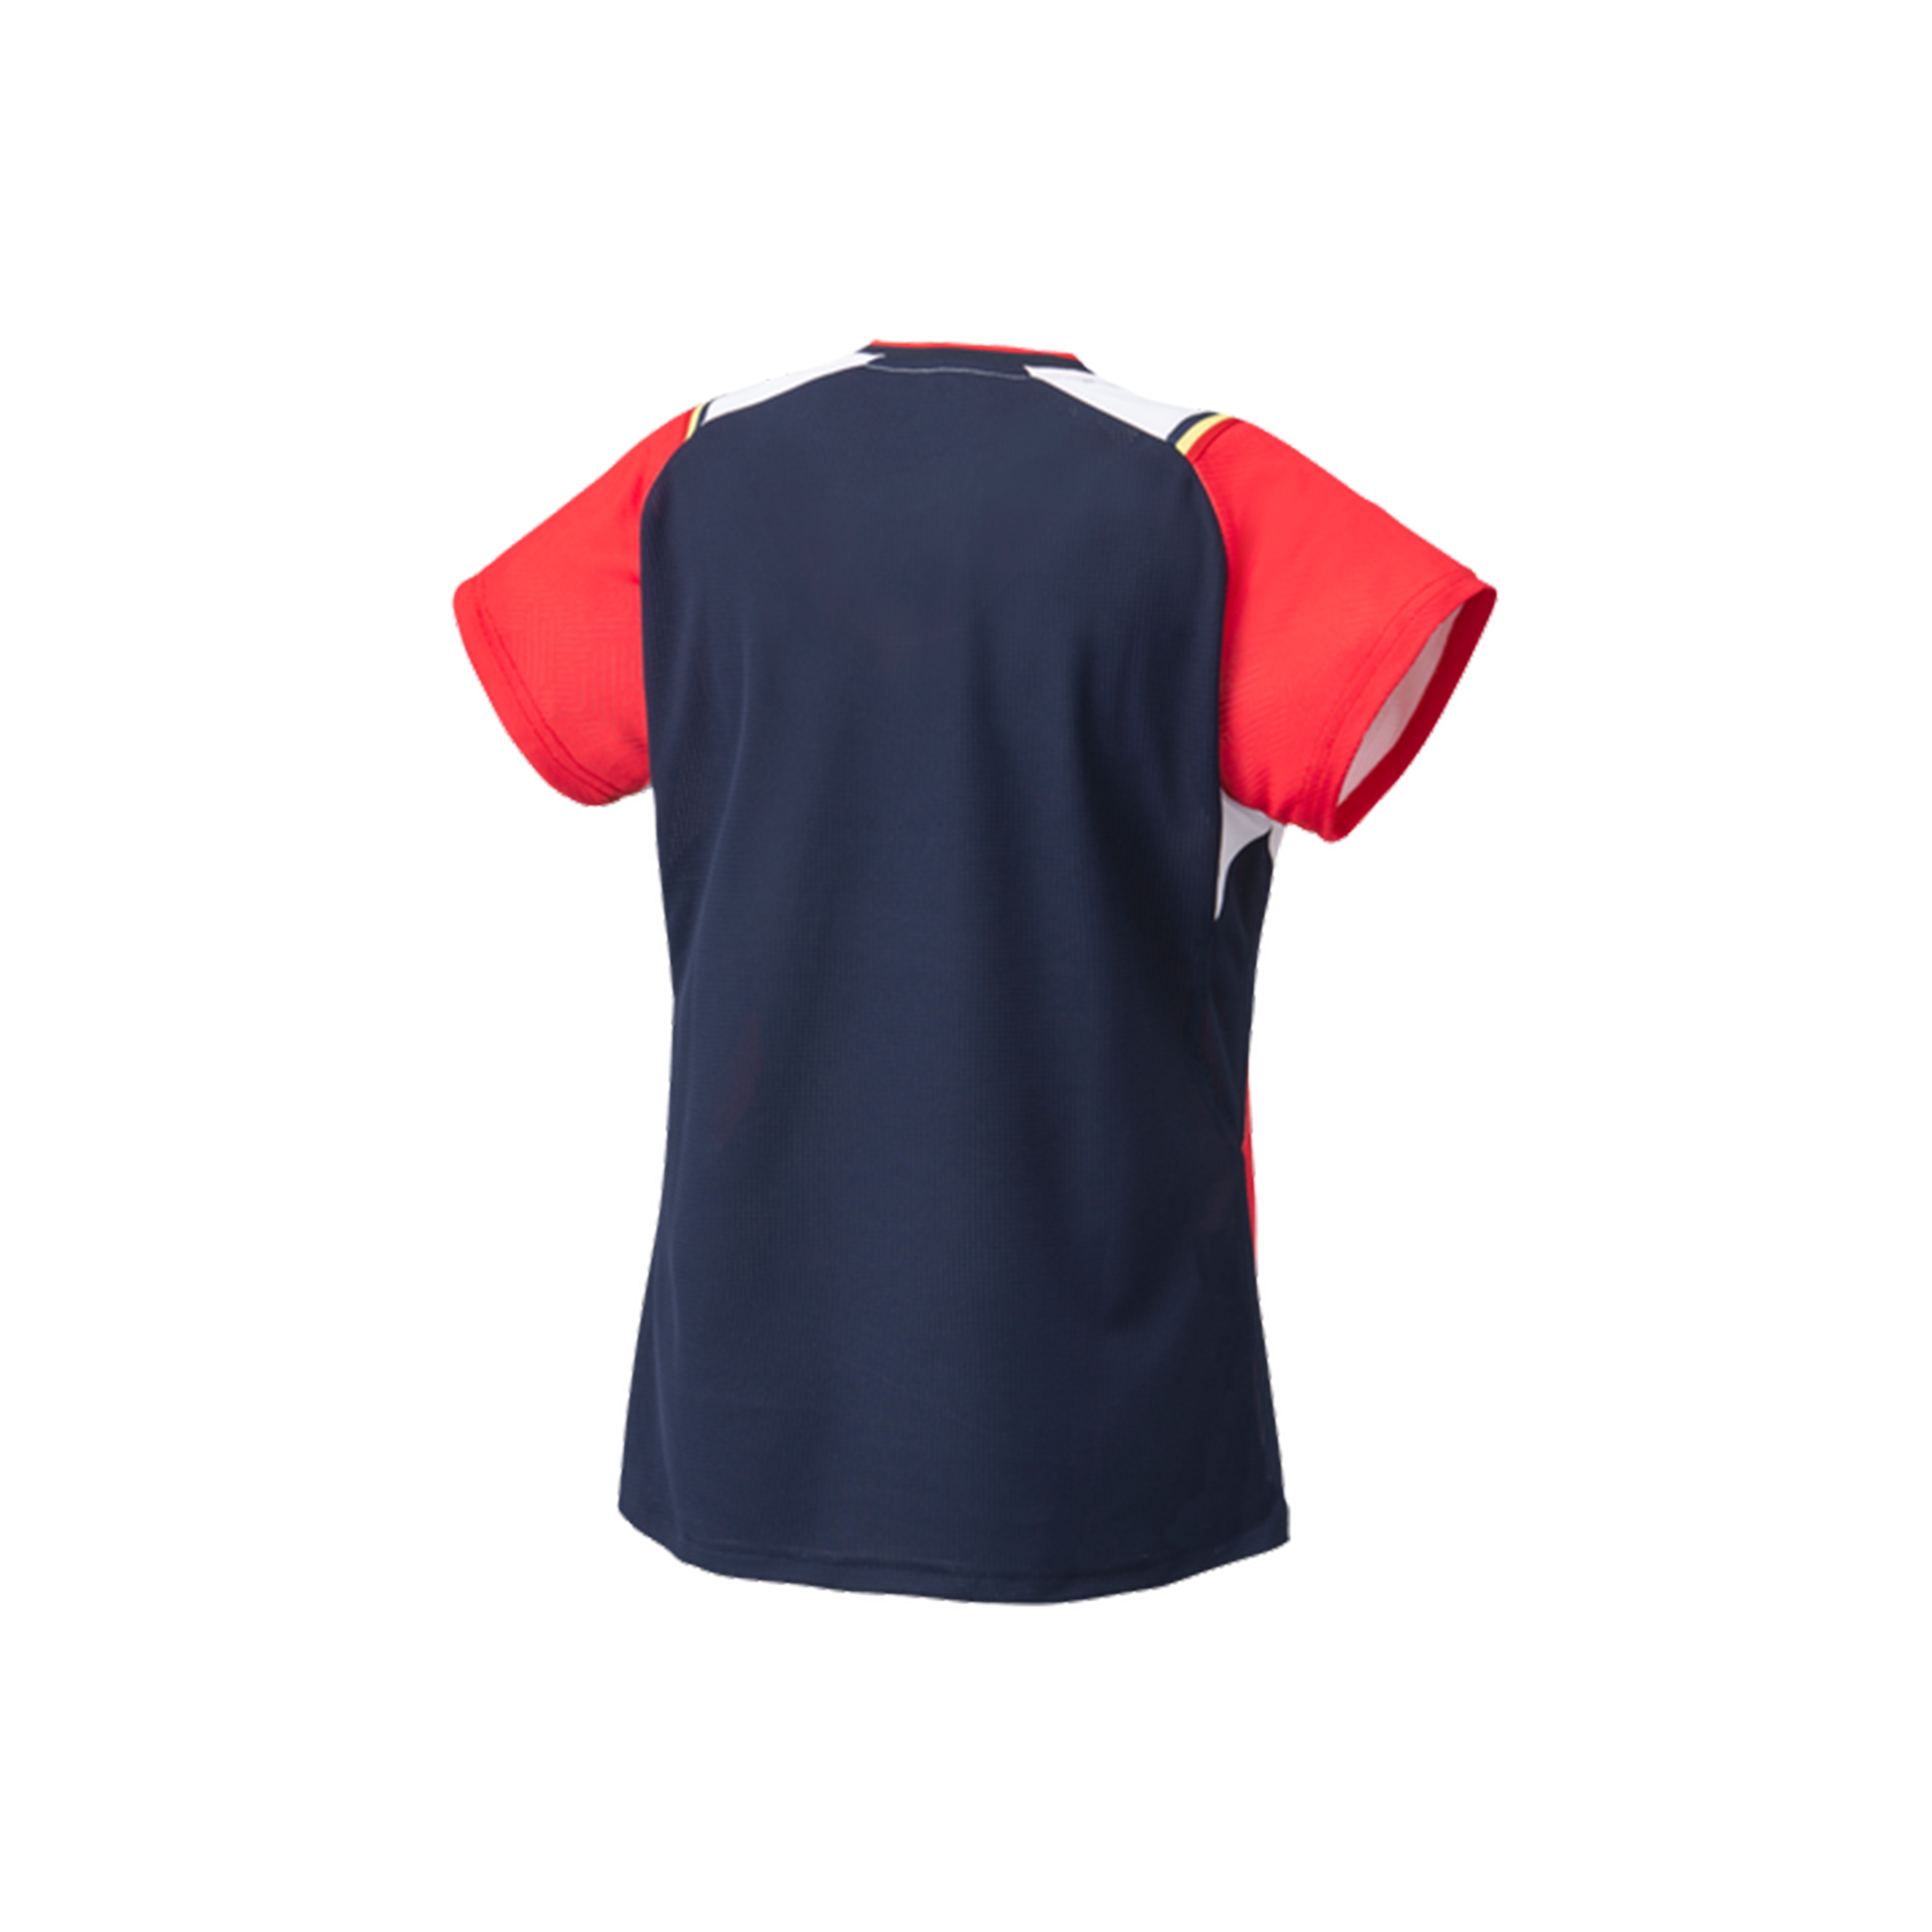 Yonex Premium Badminton/ Sports Shirt 20685 RubyRed WOMEN'S